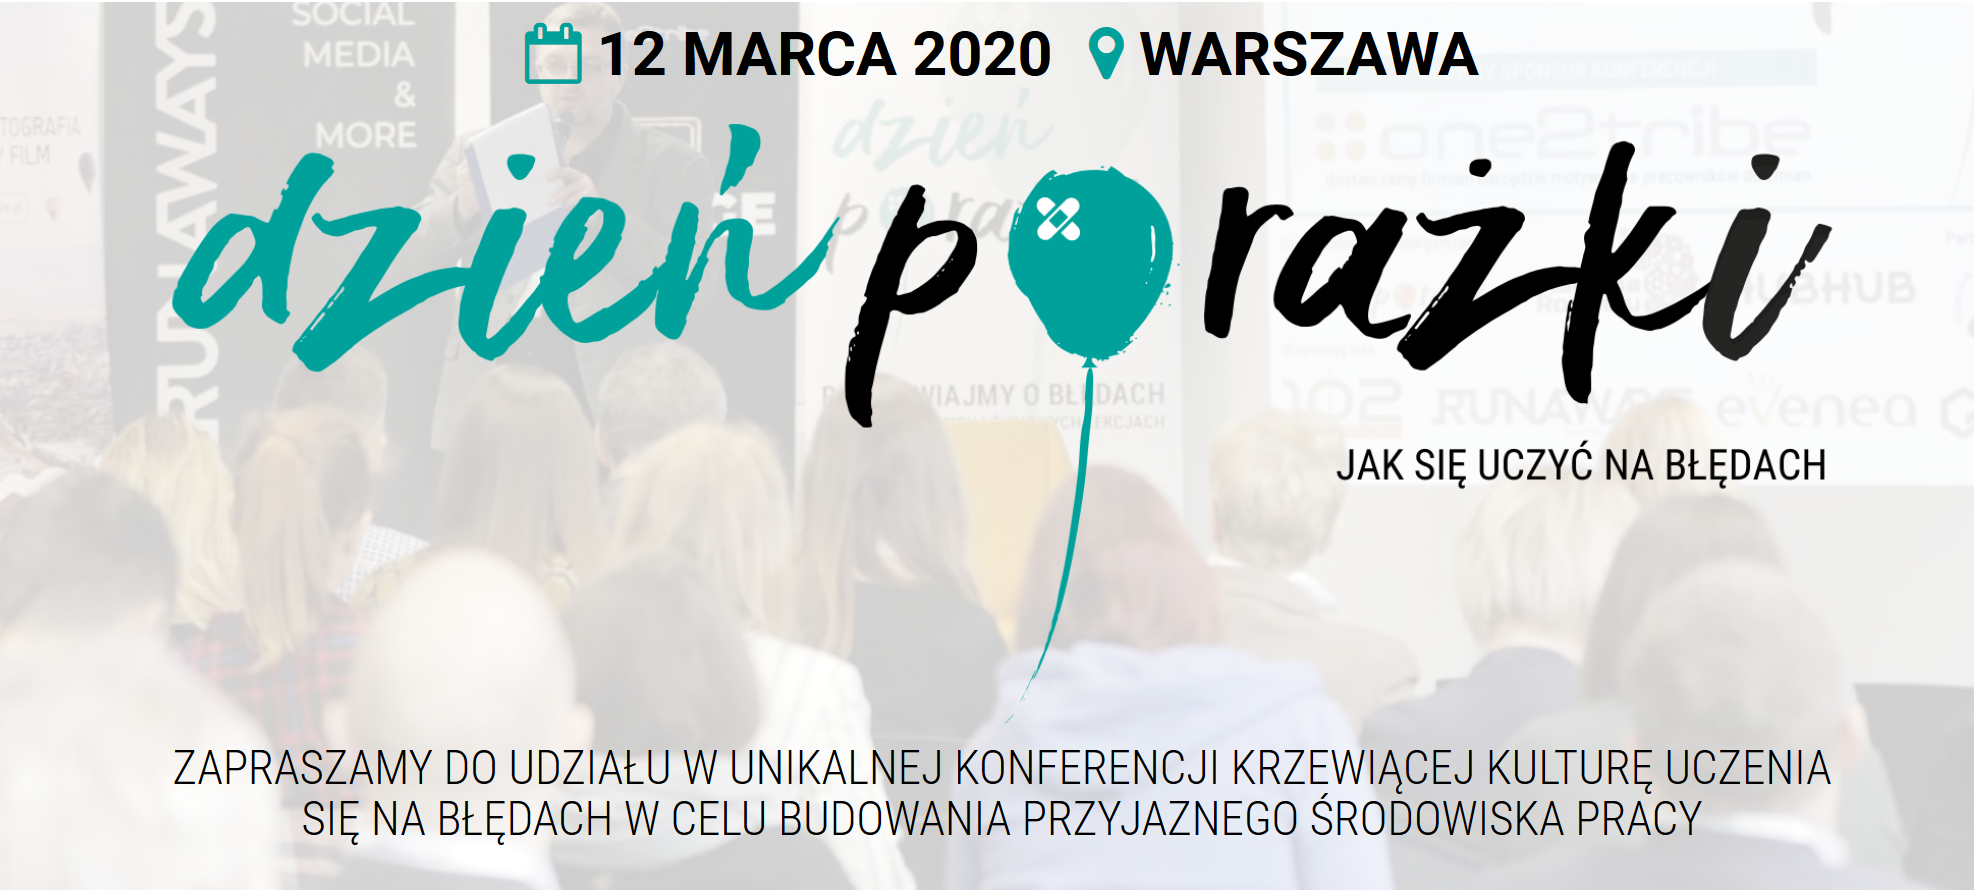 12.03.2020 Konferencja Dzień Porażki 2020 Warszawa 